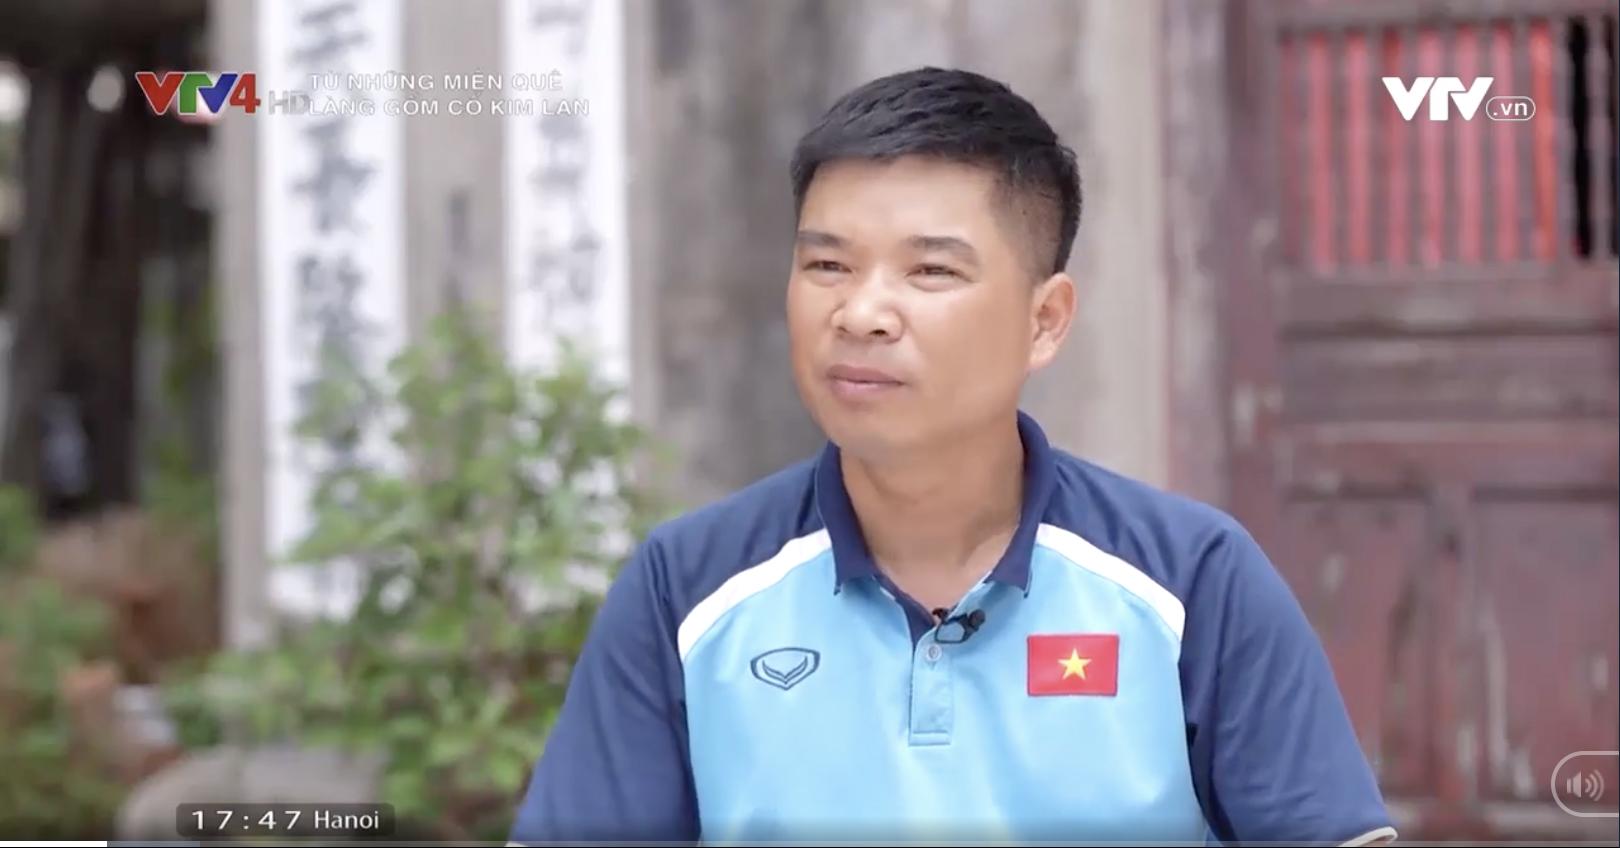 Anh Nguyễn Ngọc Phóng - Người xây dựng và phát triển thương hiệu Gốm Sứ Kim Lan Hà Nội.